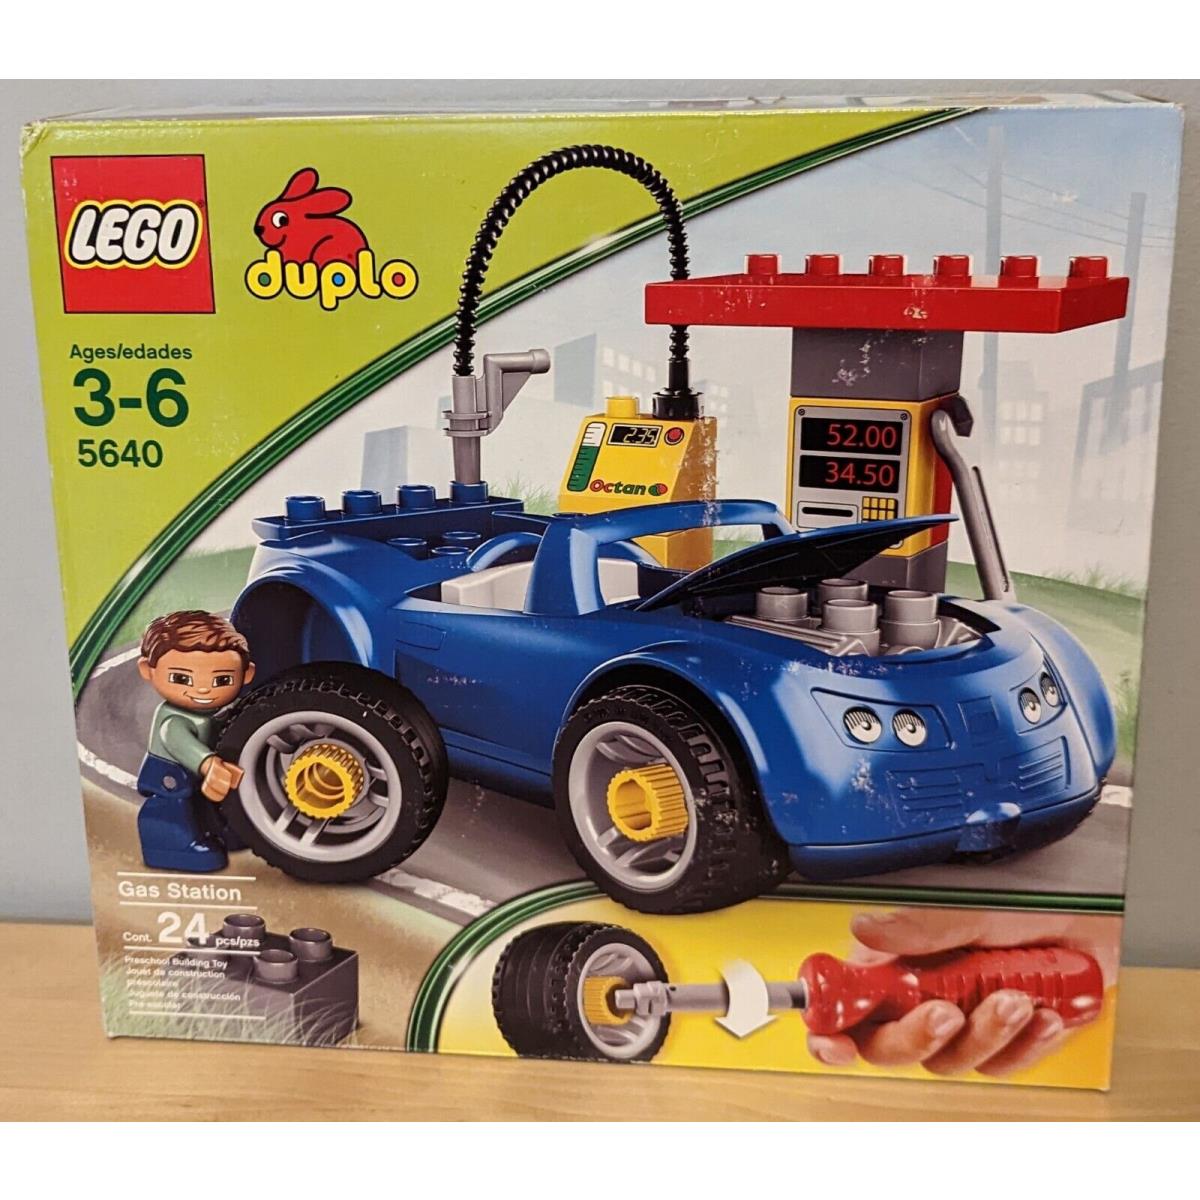 New/sealed Lego Duplo Petrol Station 5640